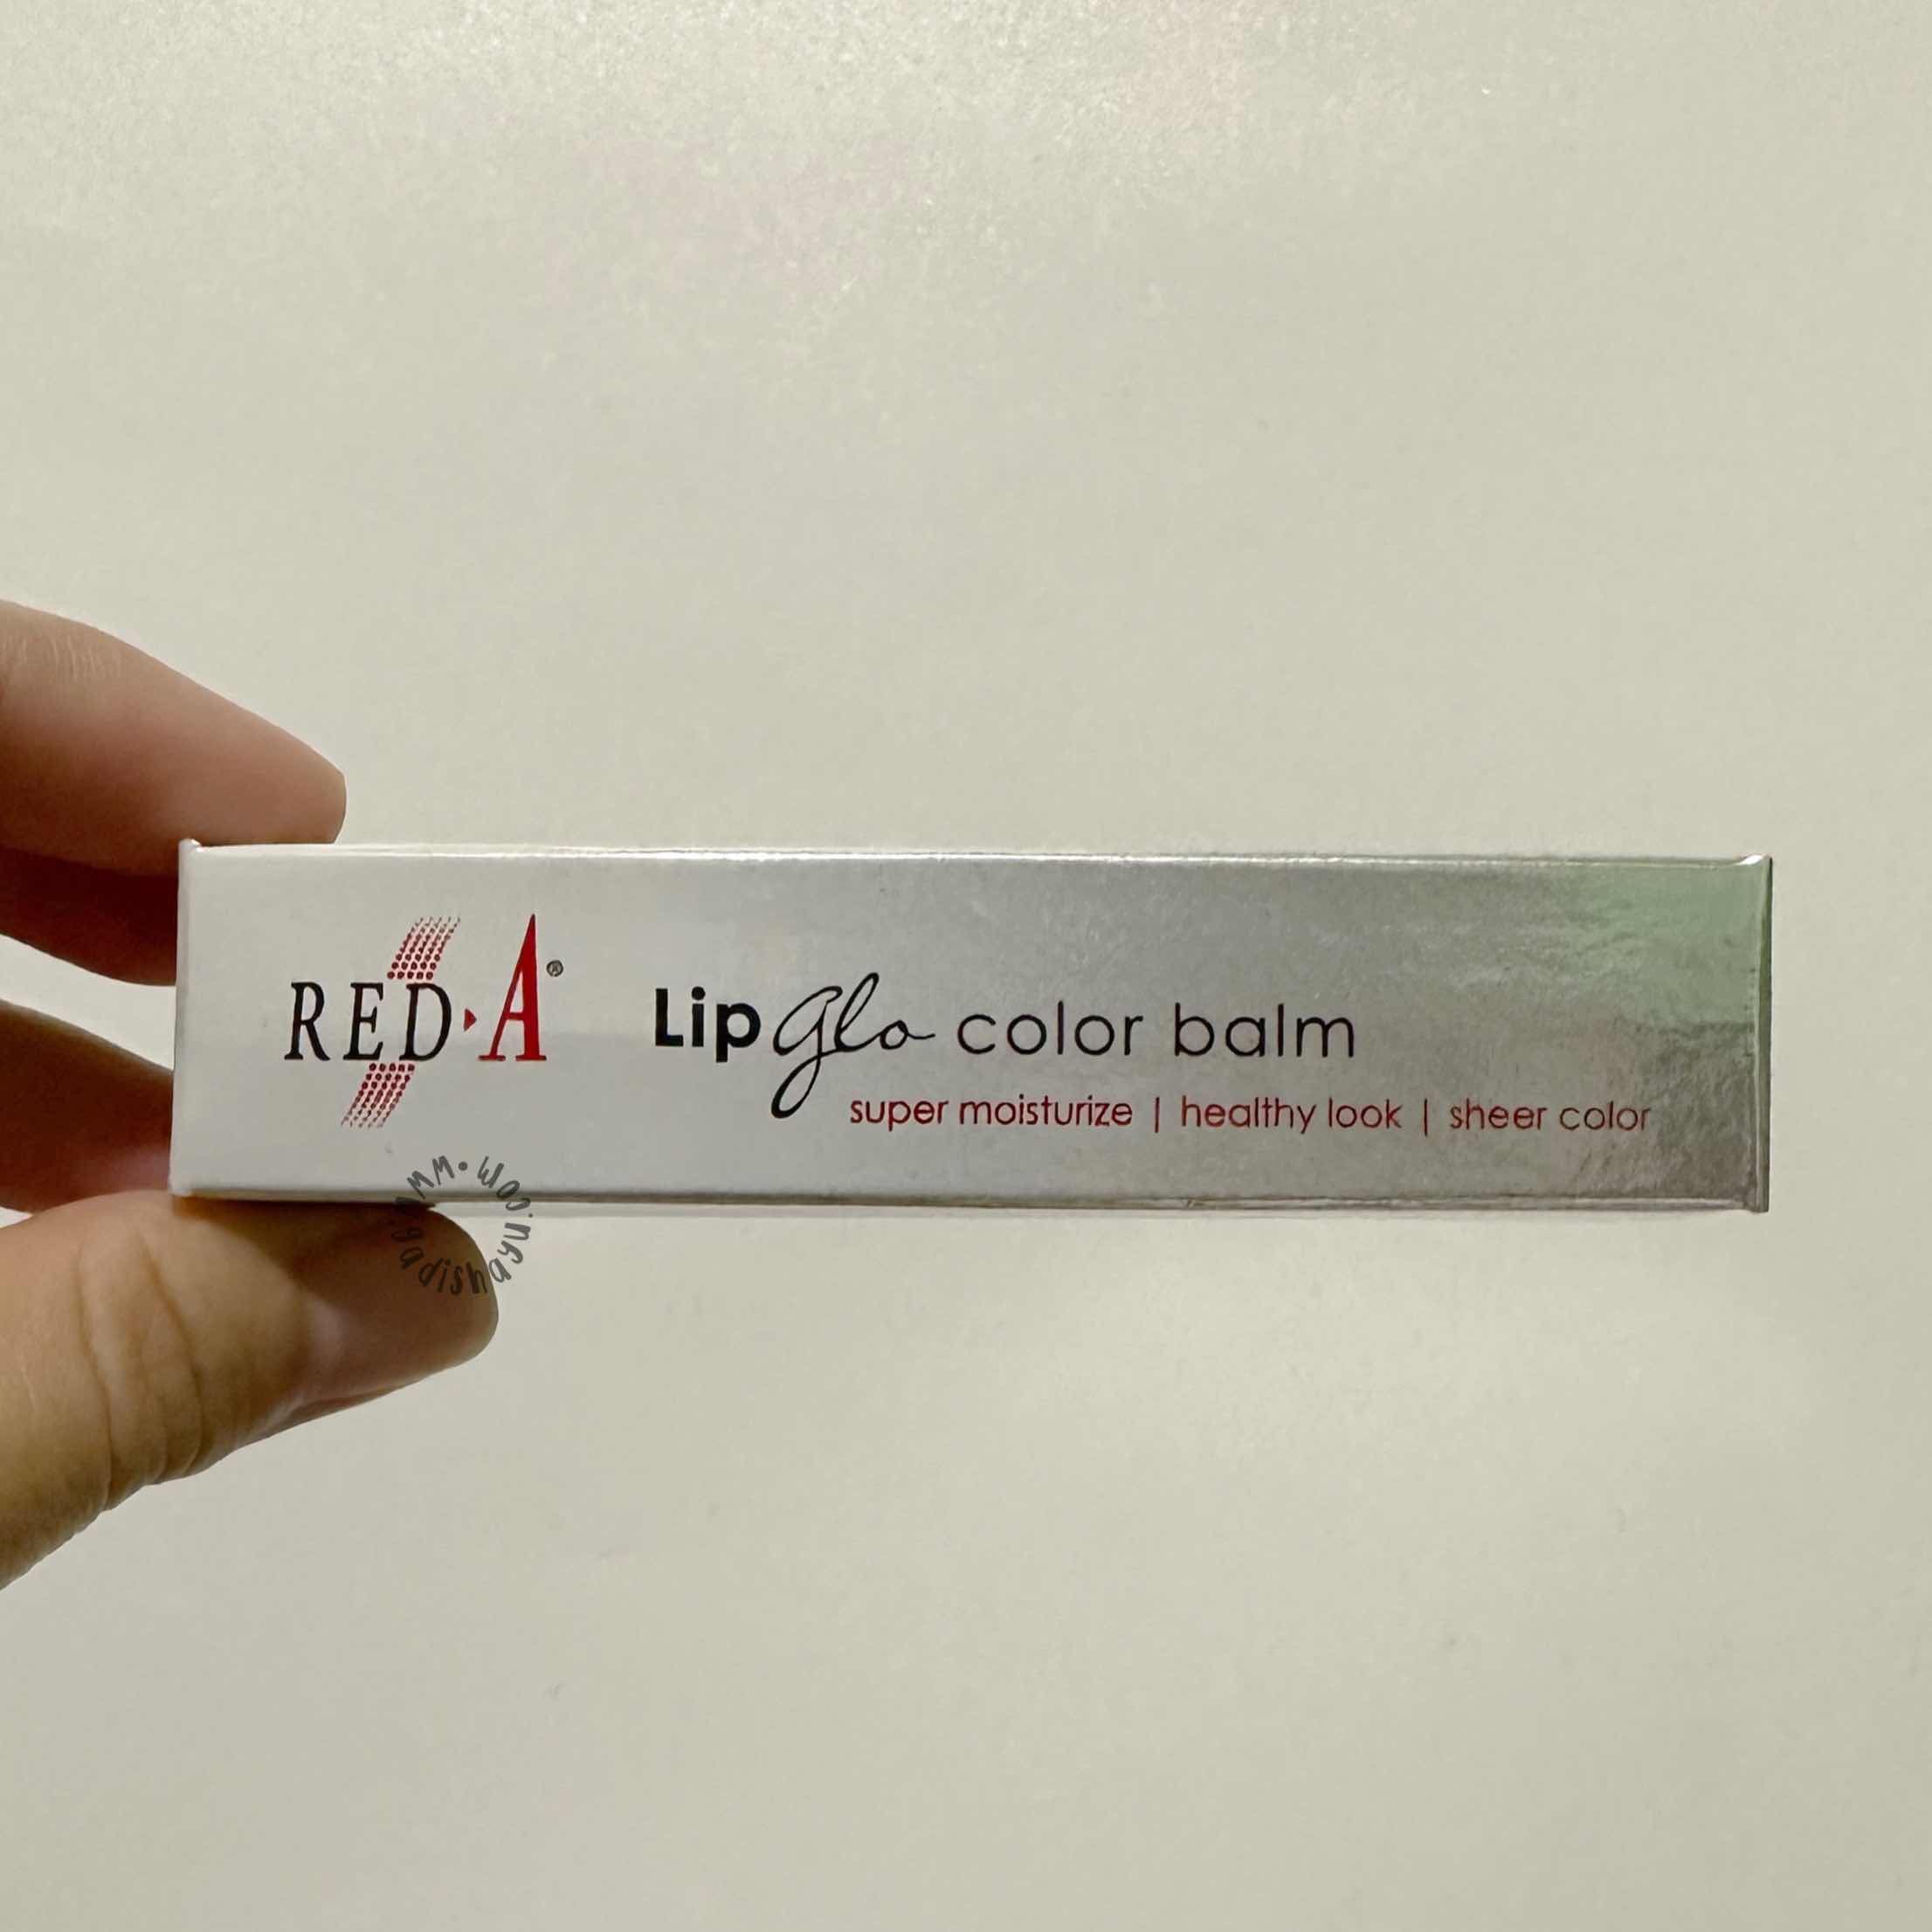 Red-A lip Glo color balm